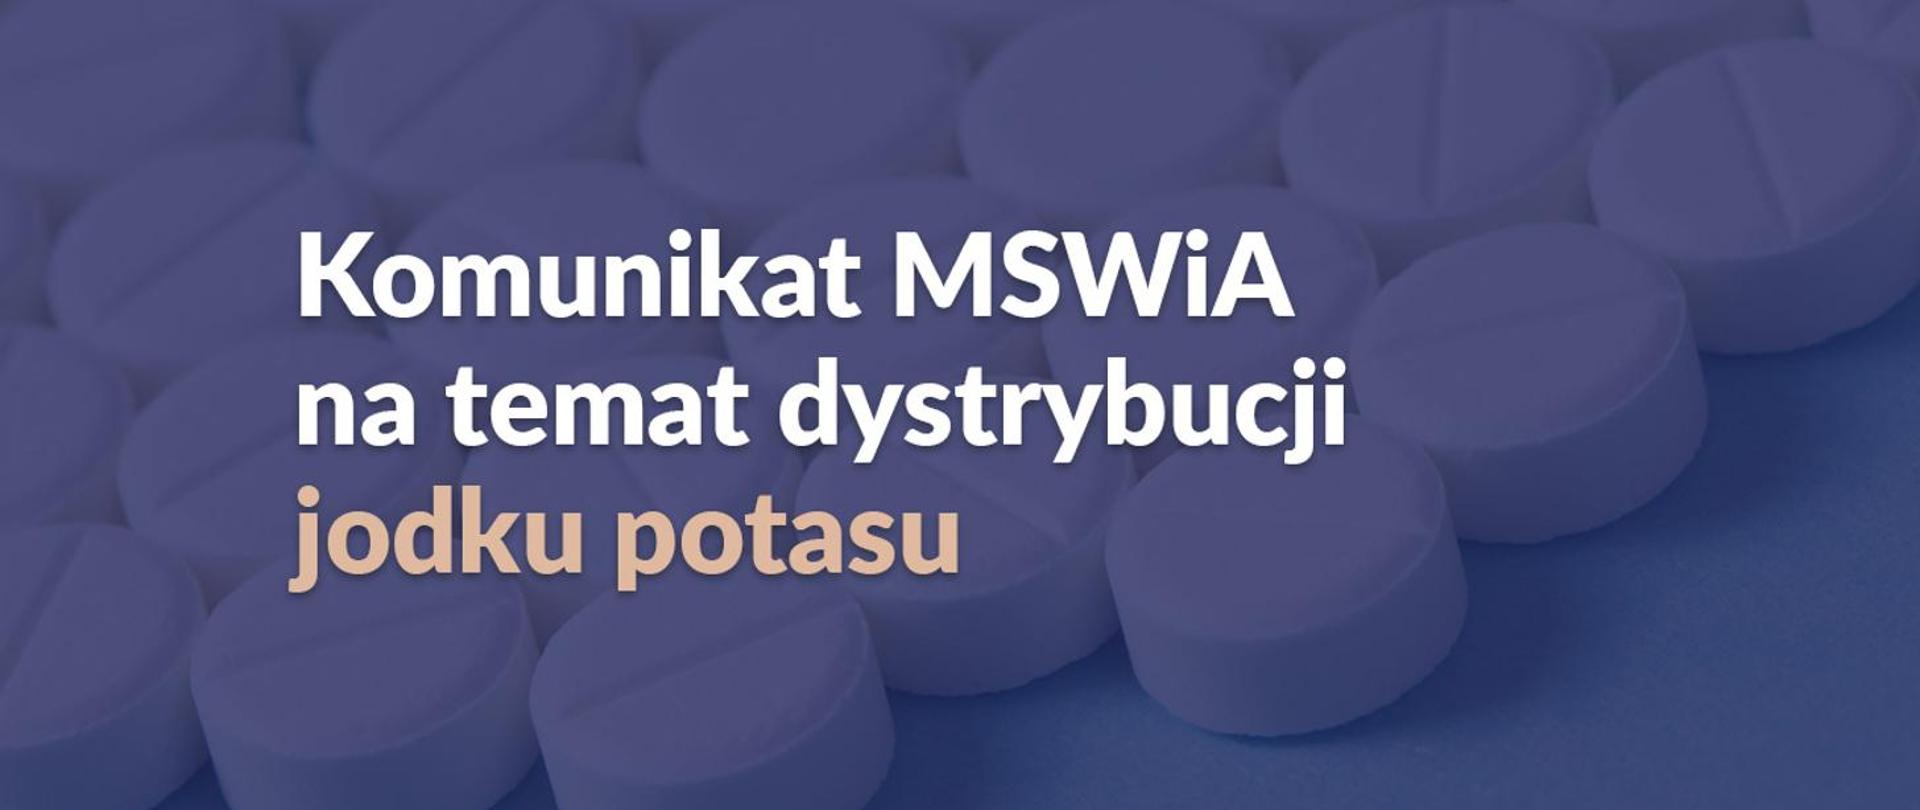 Zdjęcie przedstawia napis: "Komunikat MSWiA na temat dystrybucji jodku potasu" na tle tabletek w kolorze białym